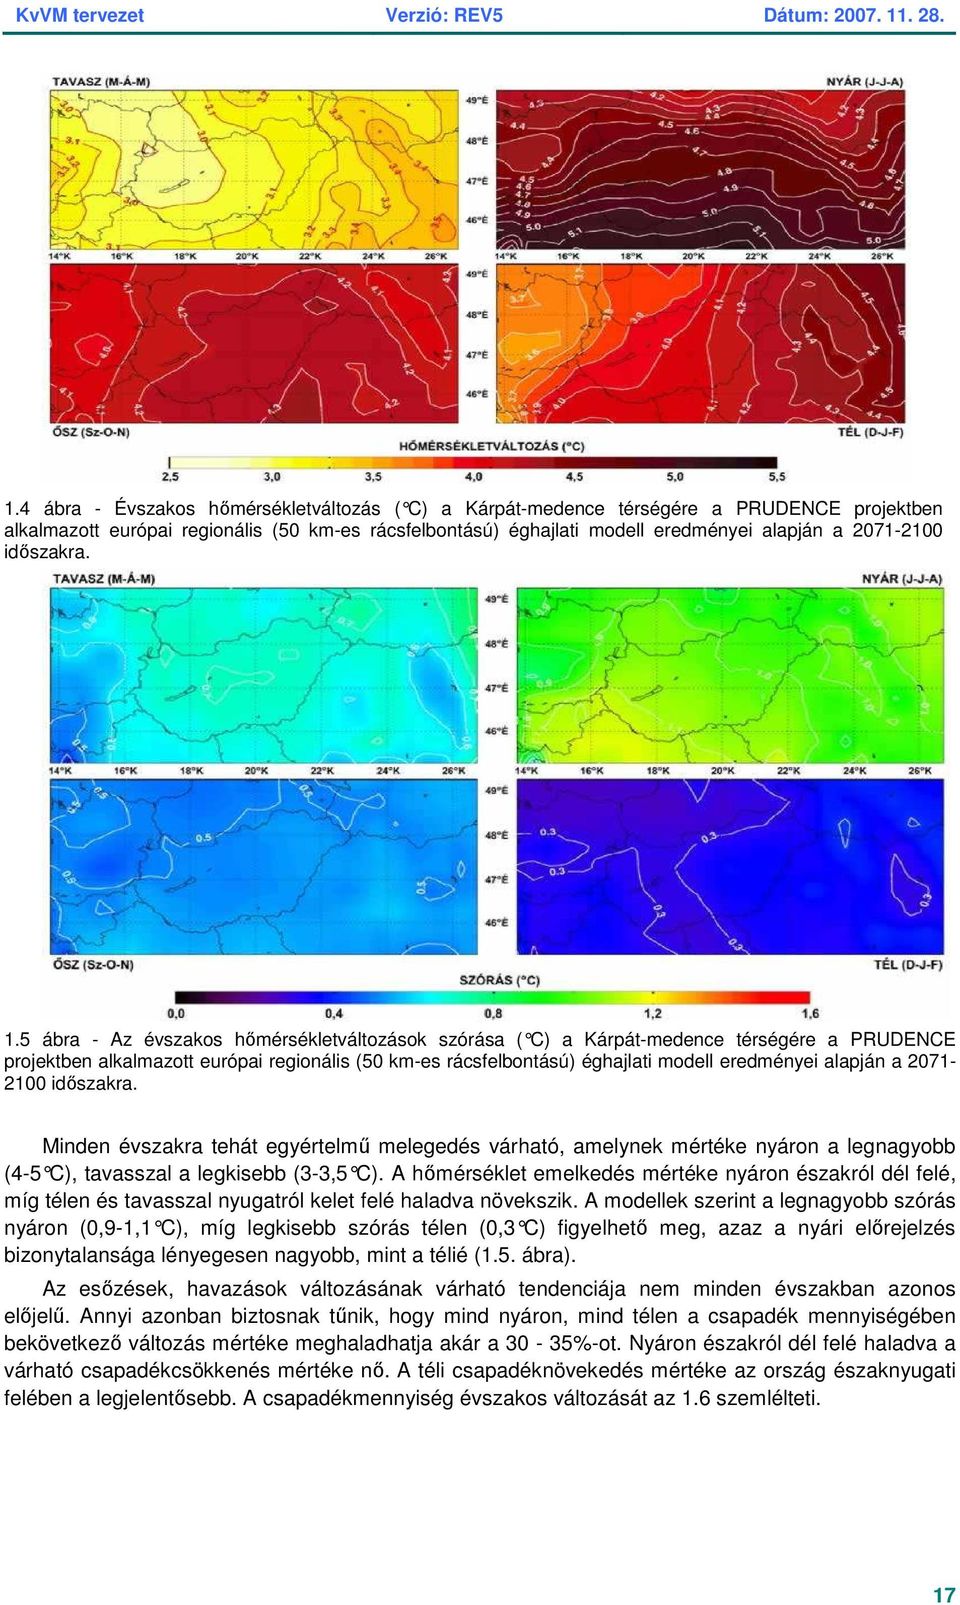 5 ábra - Az évszakos hımérsékletváltozások szórása ( C) a Kárpát-medence té rségére a PRUDENCE projektben alkalmazott európai regionális (50 km-es rácsfelbontású) éghajlati modell eredményei alapján